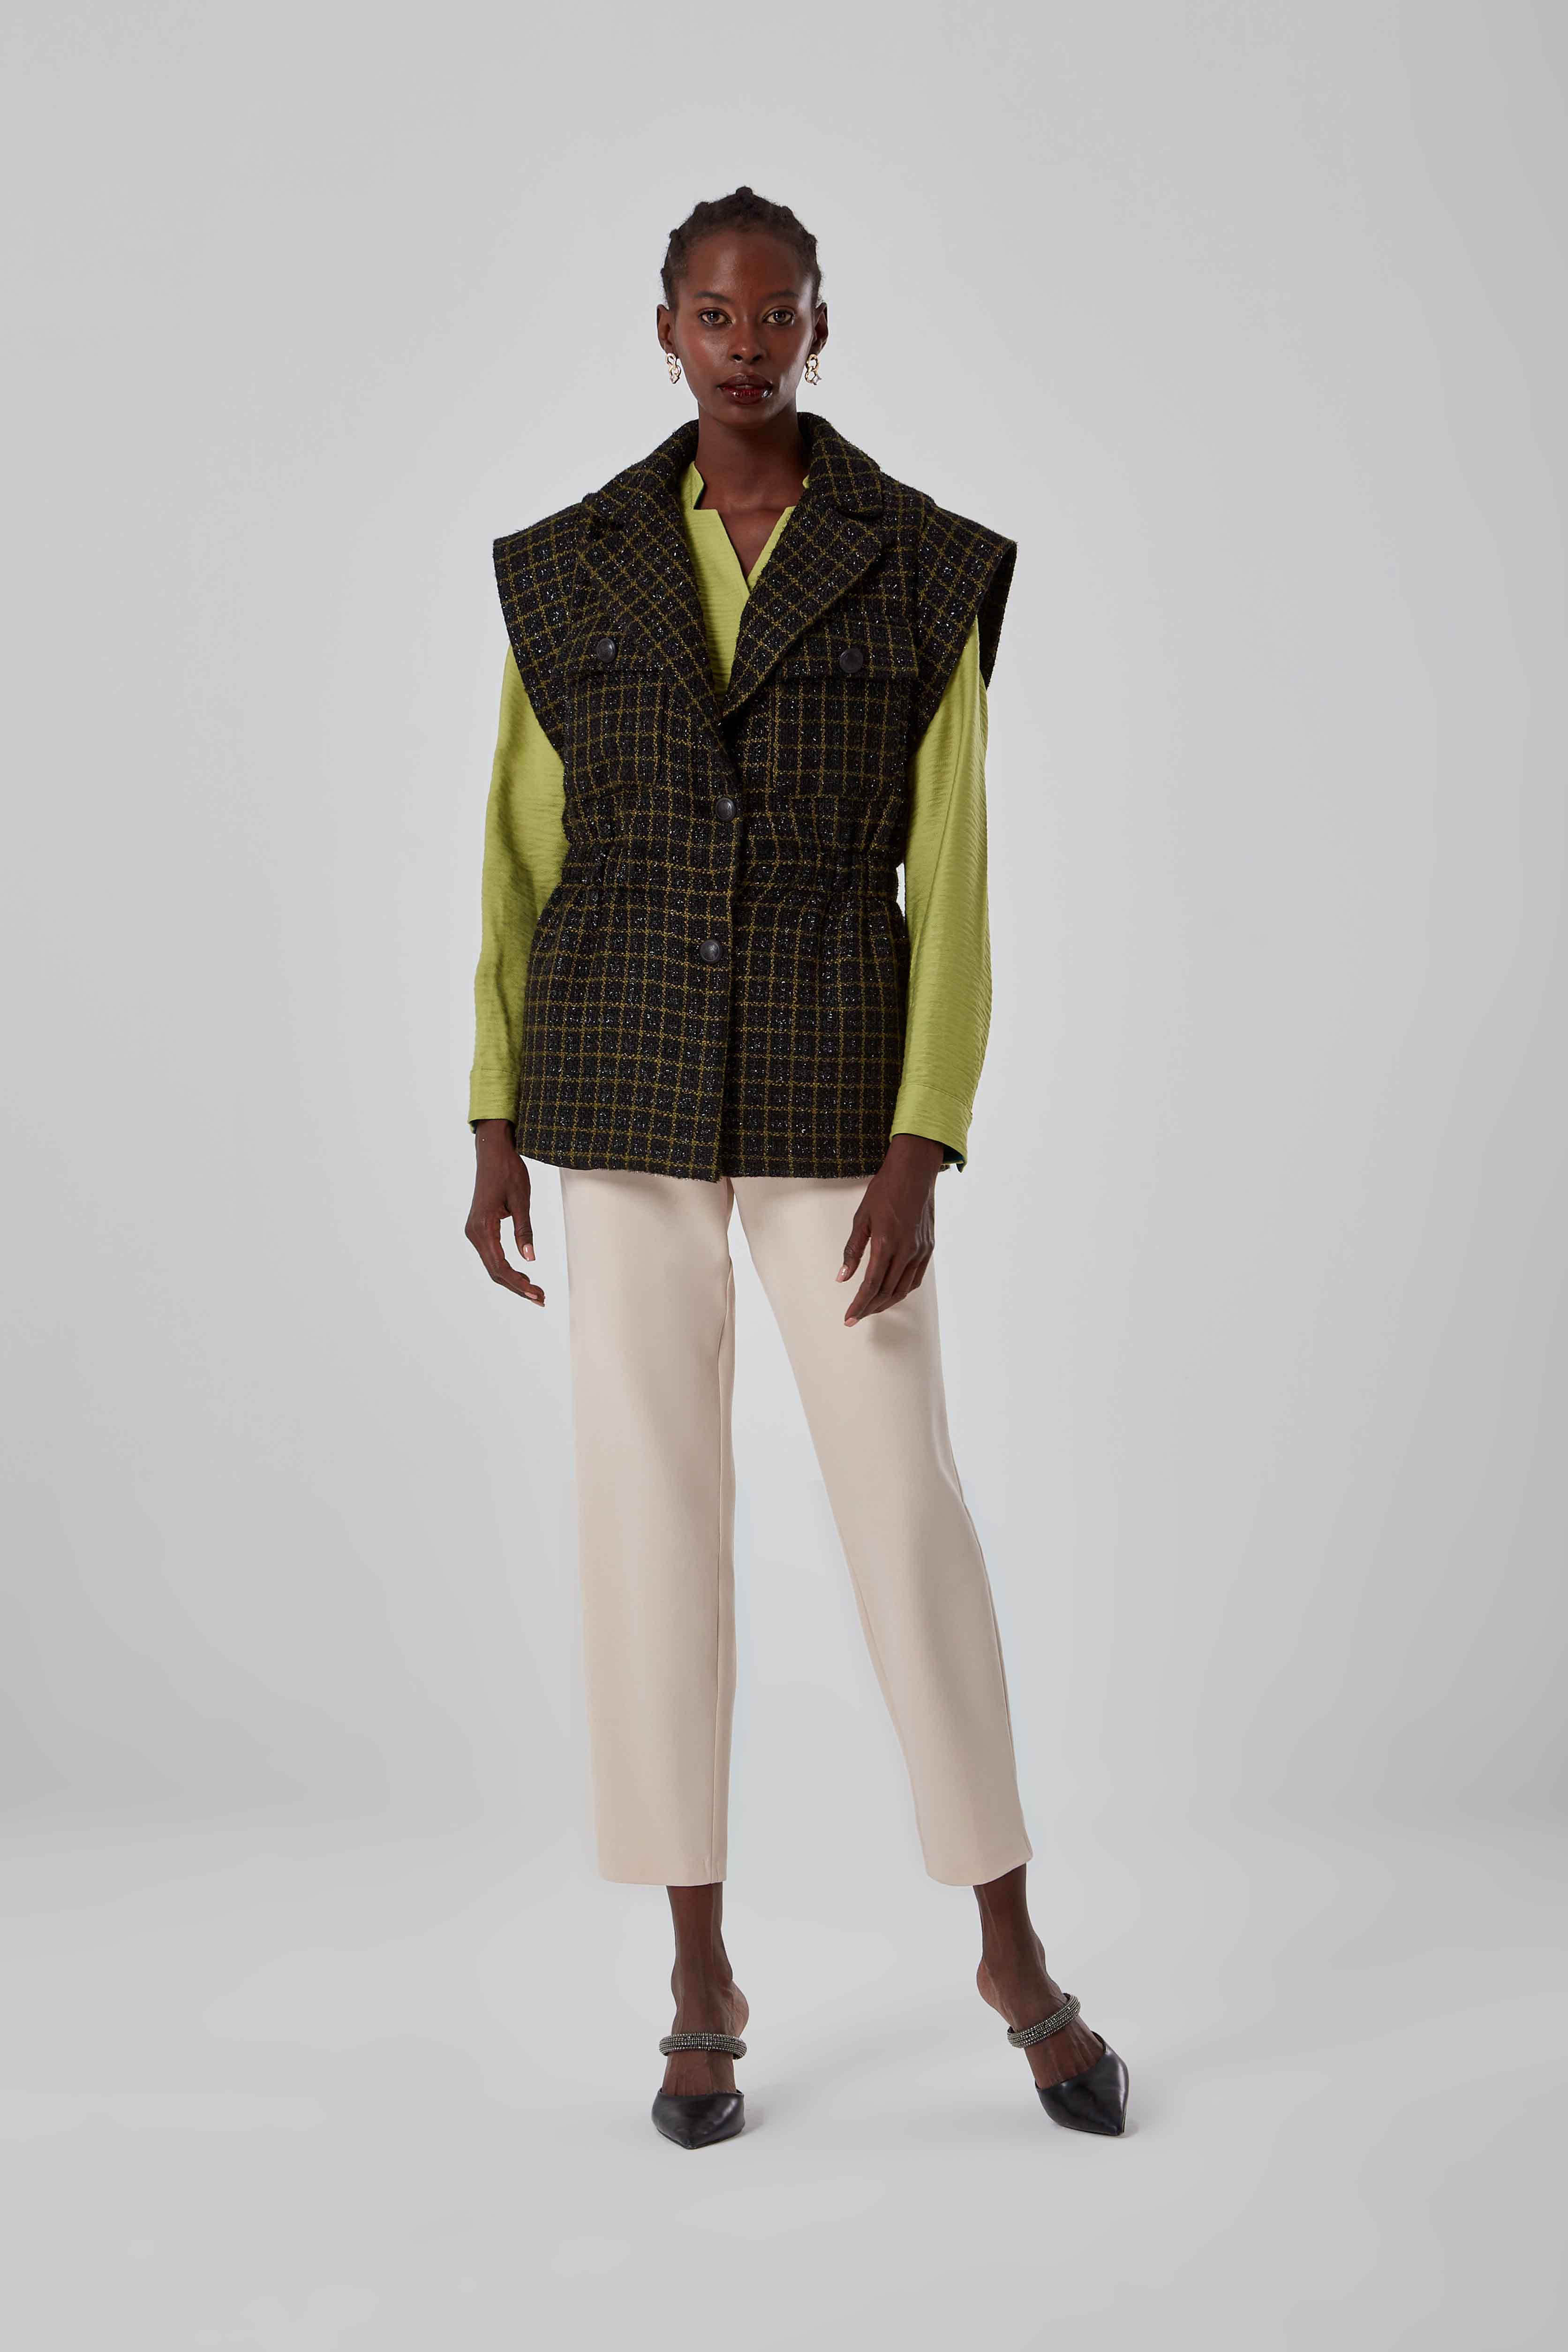 Patterned Green Tweed Vest